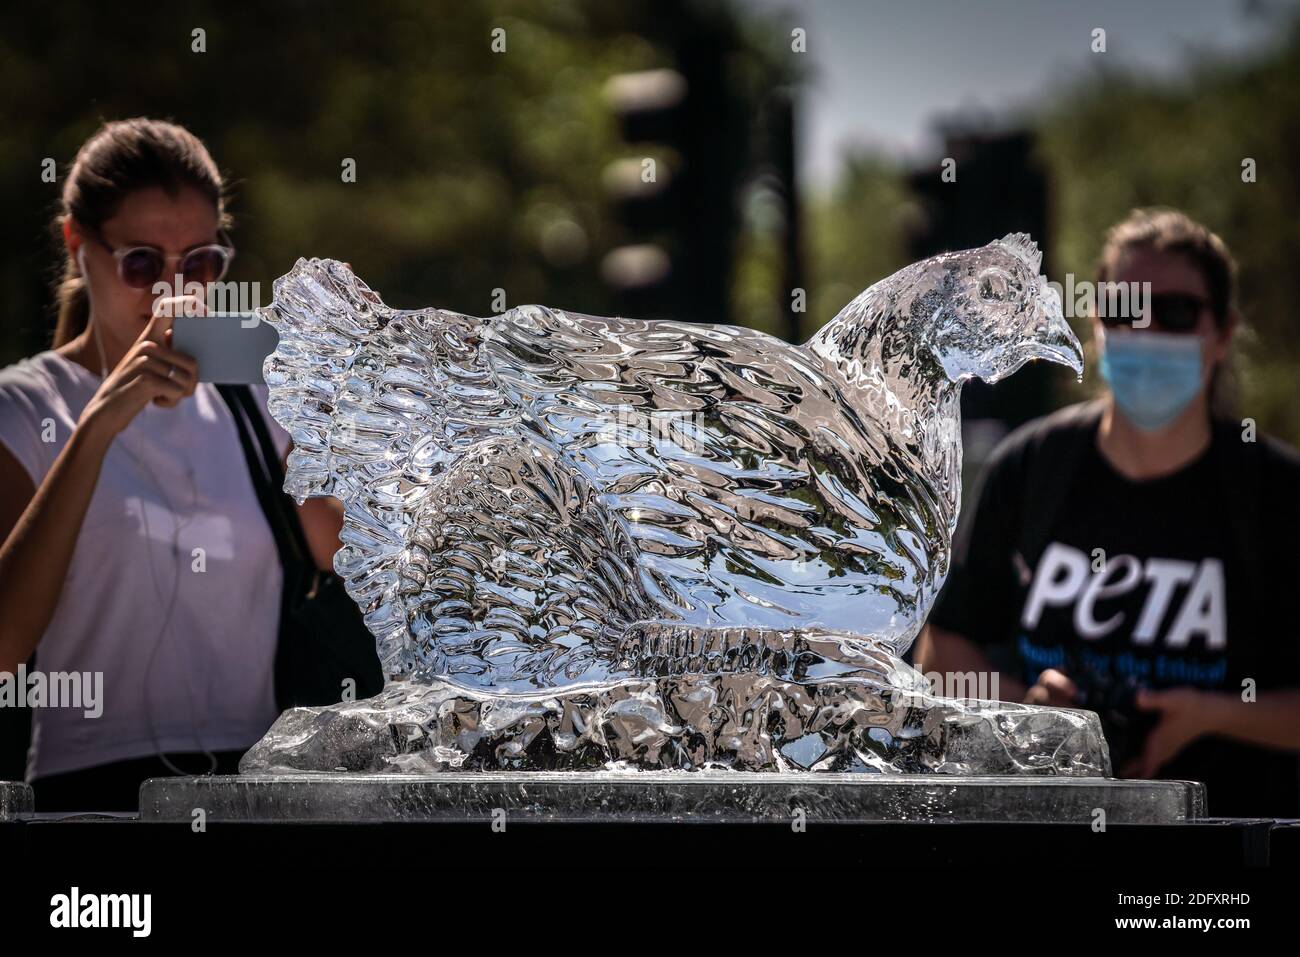 Manifestation de la vague de chaleur PETA. Les militants des droits des animaux PETA placent un trio de sculptures sur glace animales, dont une vache, un porc et un poulet pour fondre lentement, Londres Banque D'Images